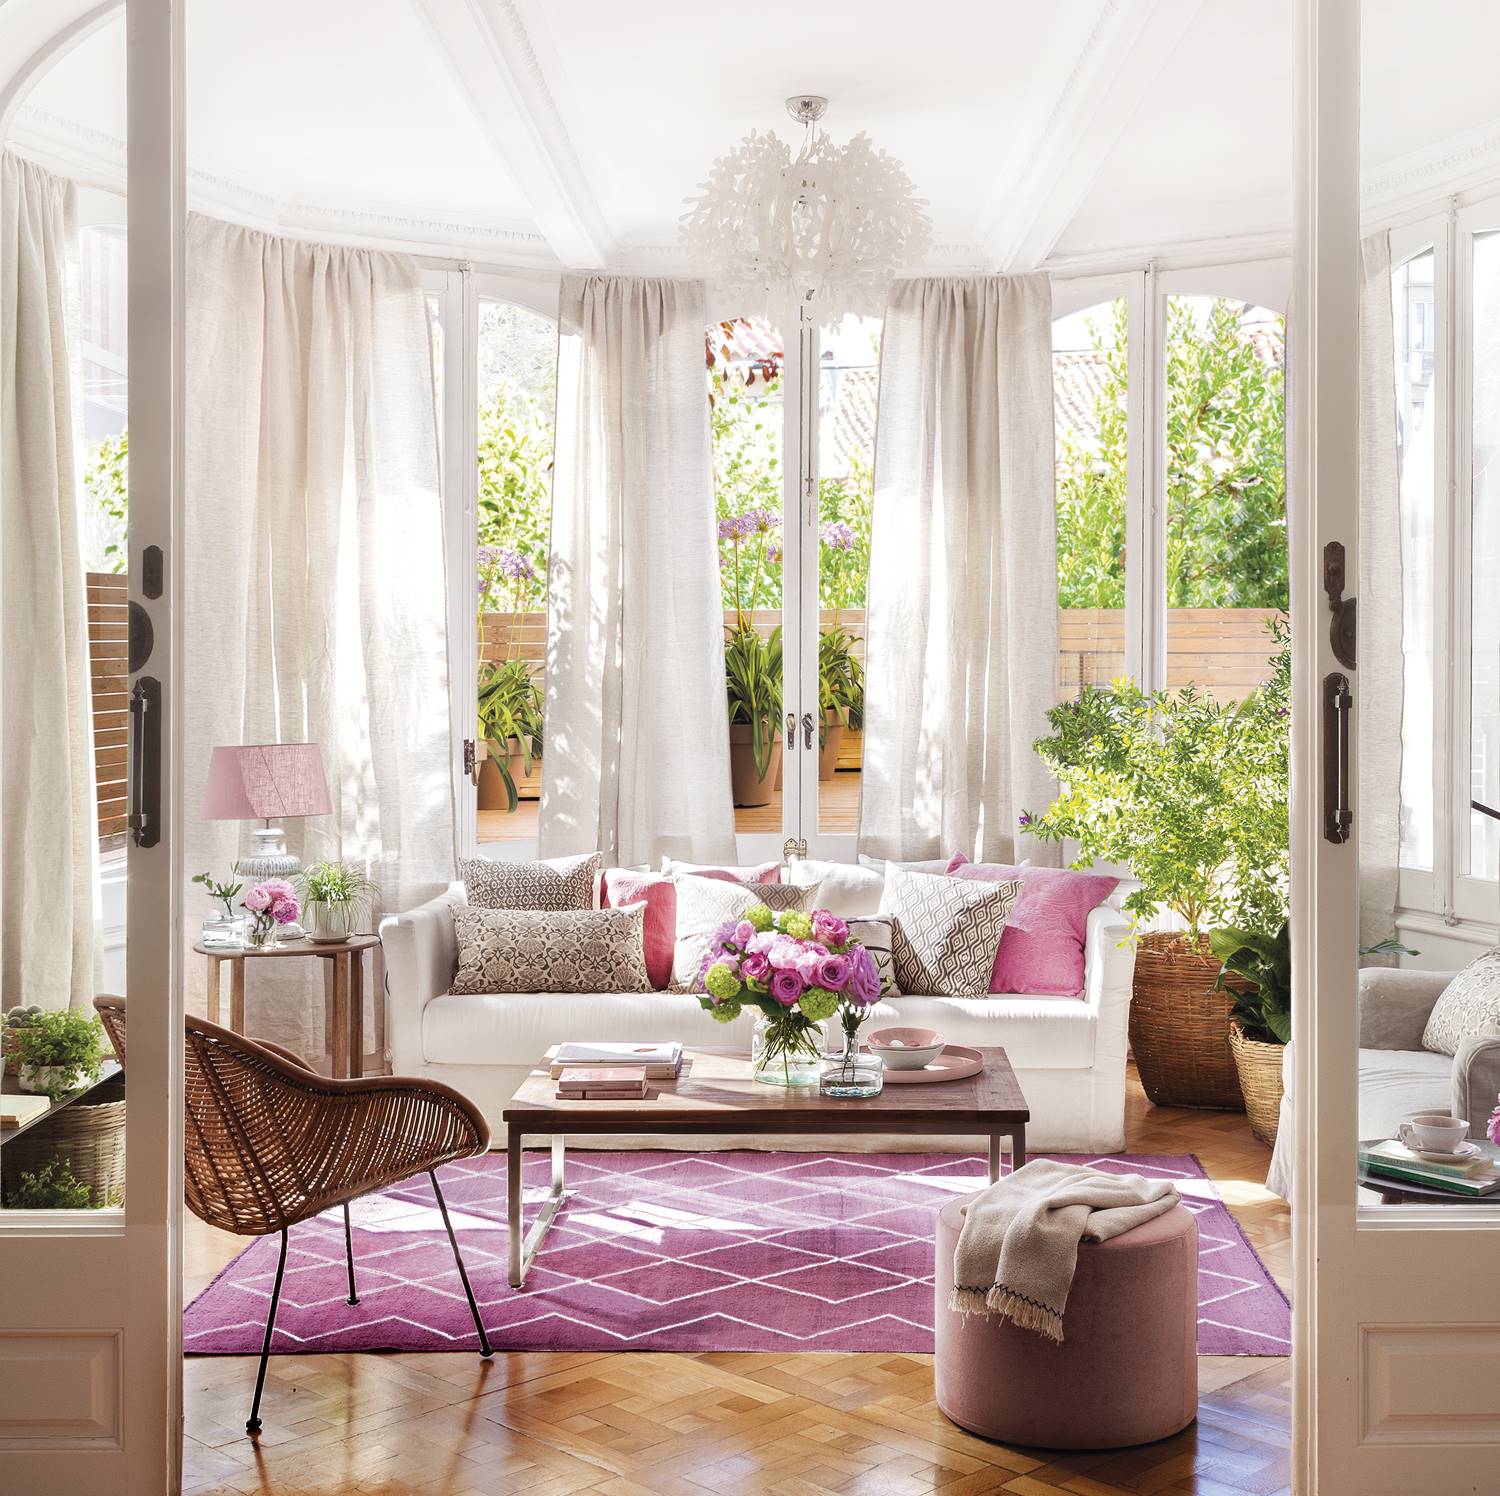 Sofá blanco con cojines y alfombra rosa en salón tipo galerí con puertas correderas con cristal, lámpara de techo, pufs y silla de fibra